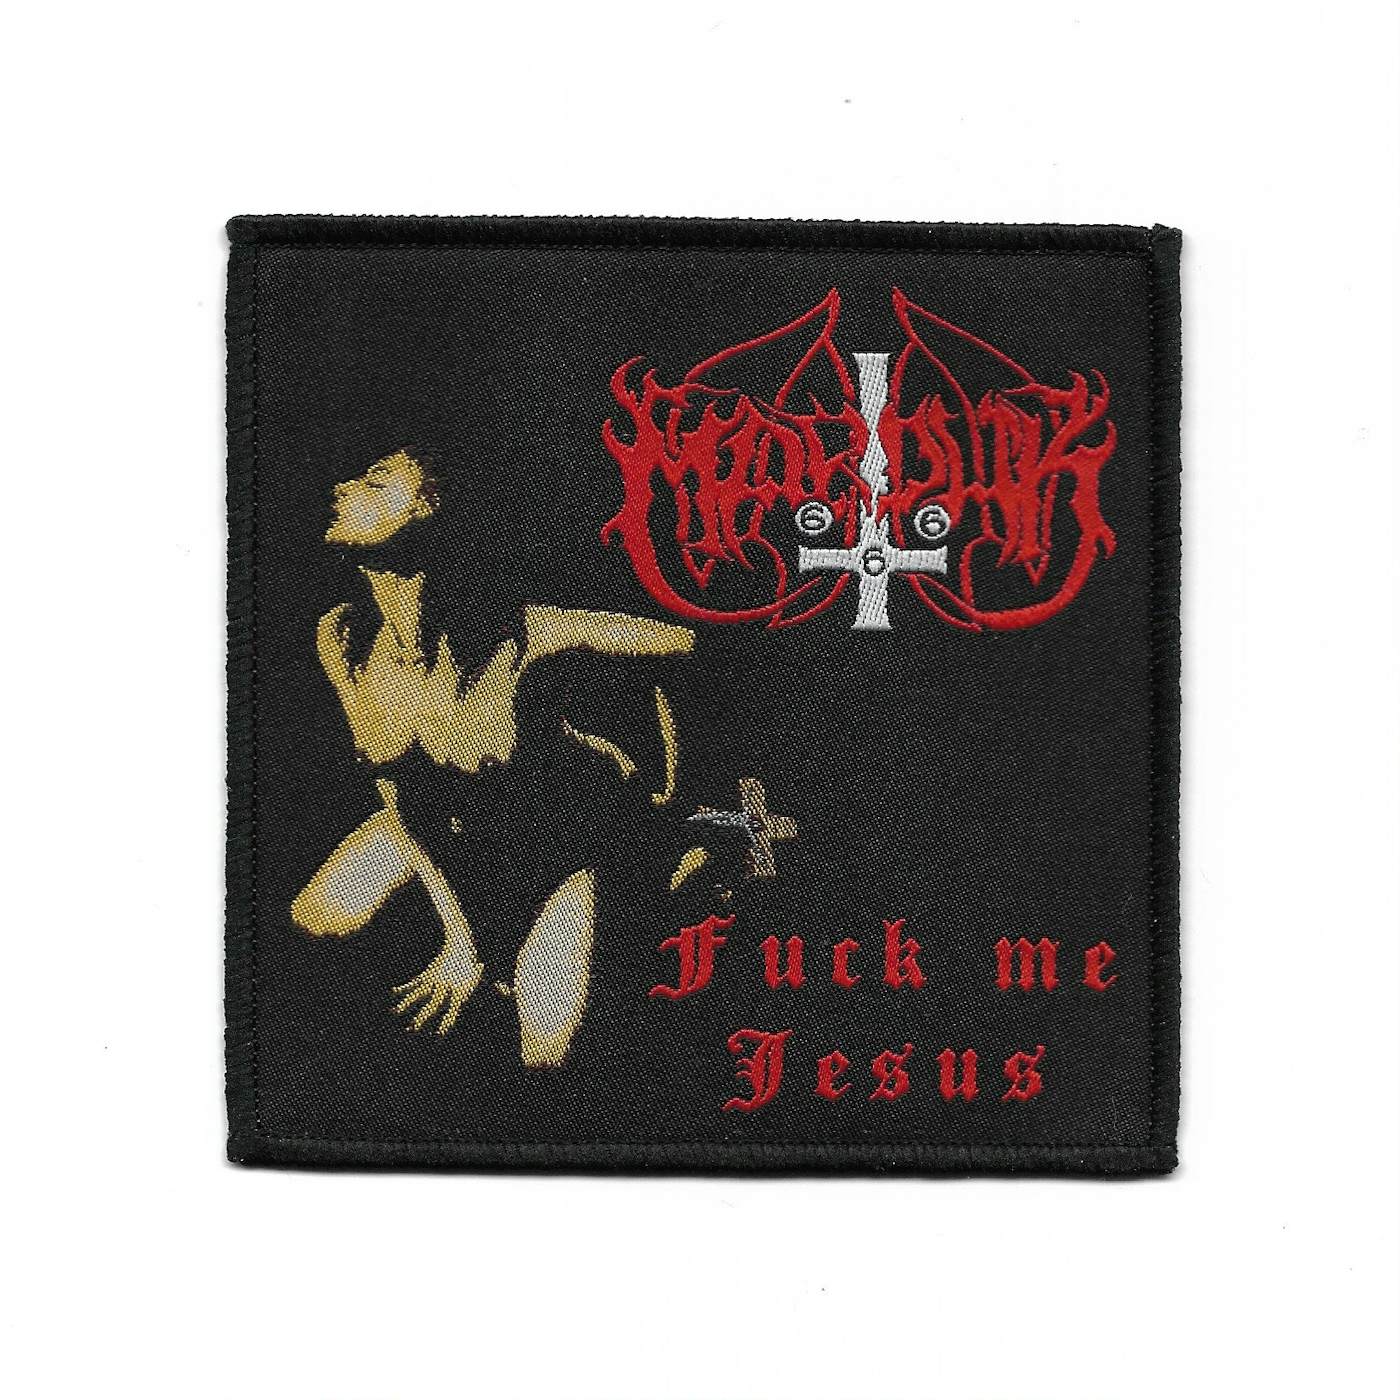 Marduk "Fuck Me Jesus" Patch